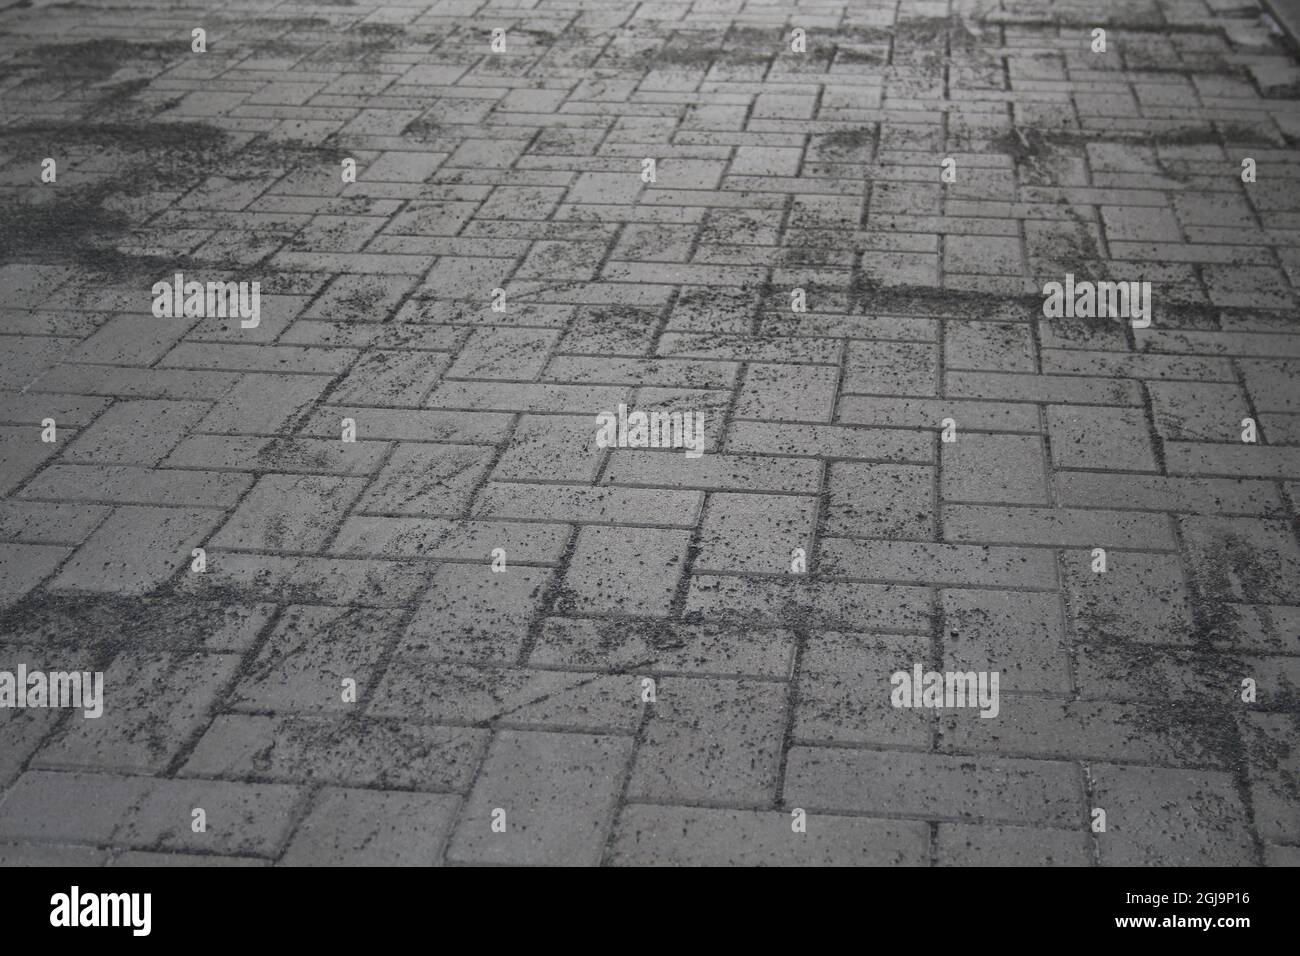 Frisch verlegtes Pflaster mit Einkehrsand - Freshly laid pavement with sand Stock Photo